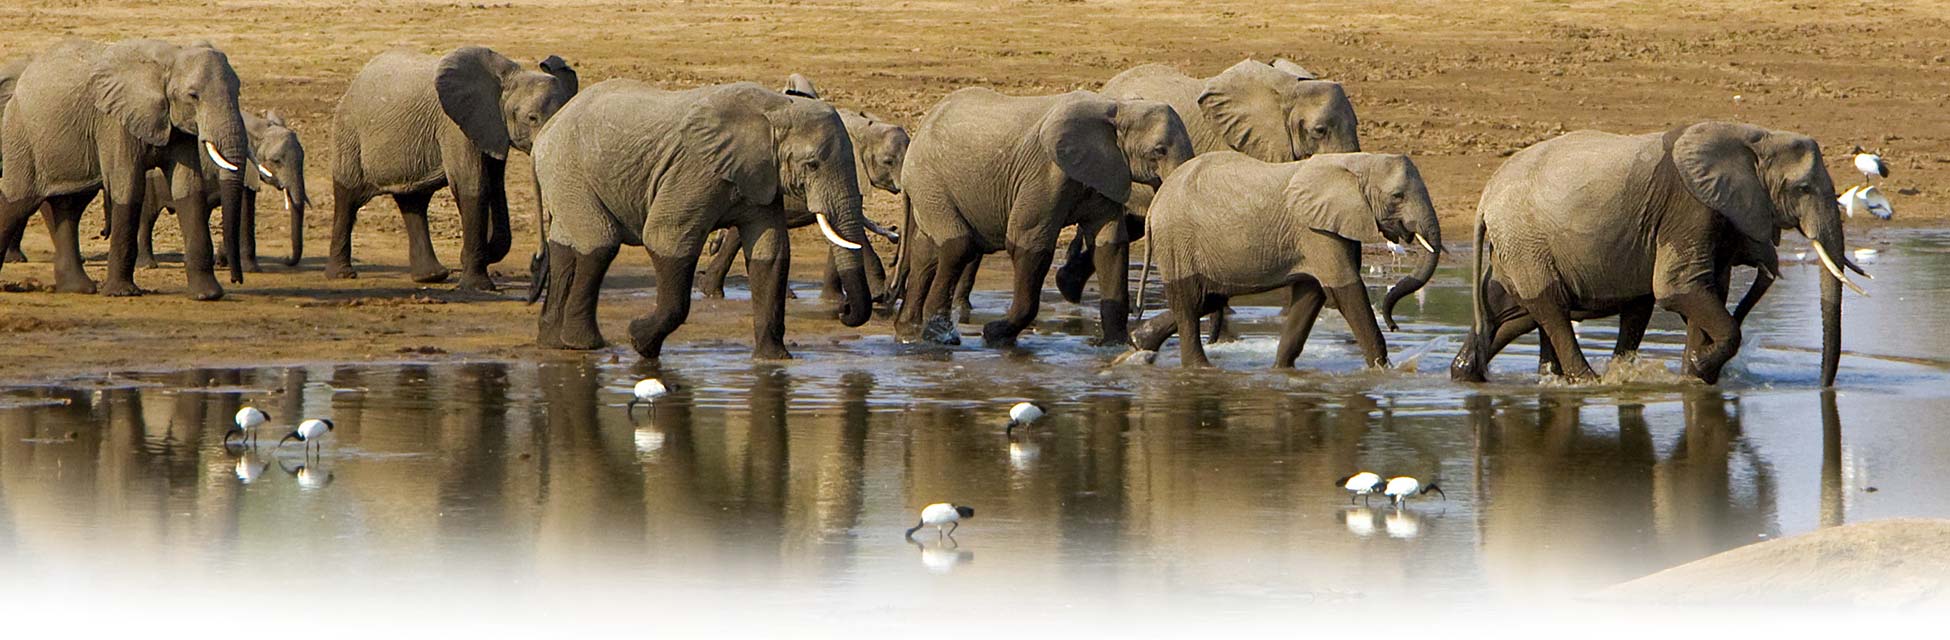 afrika-olifant-3.jpg